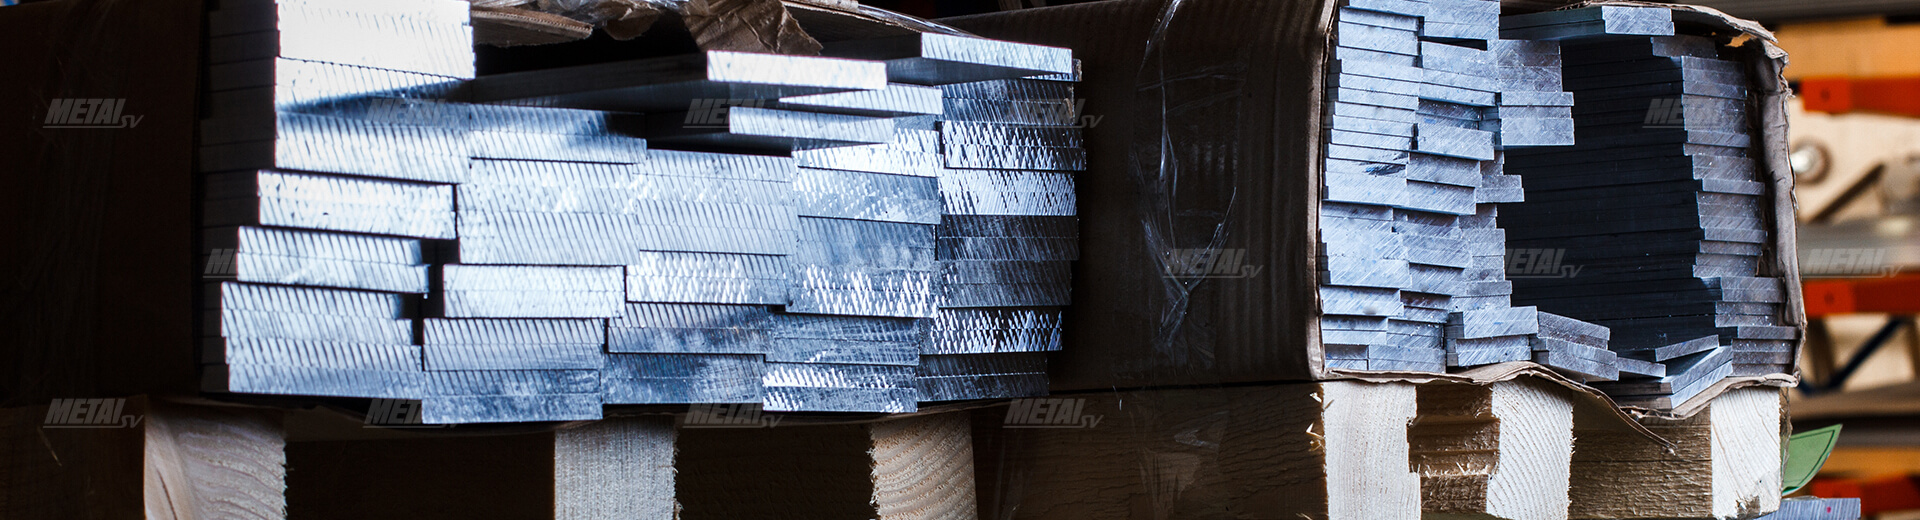 Шина — алюминиевый прокат для Махачкалы изображение №6